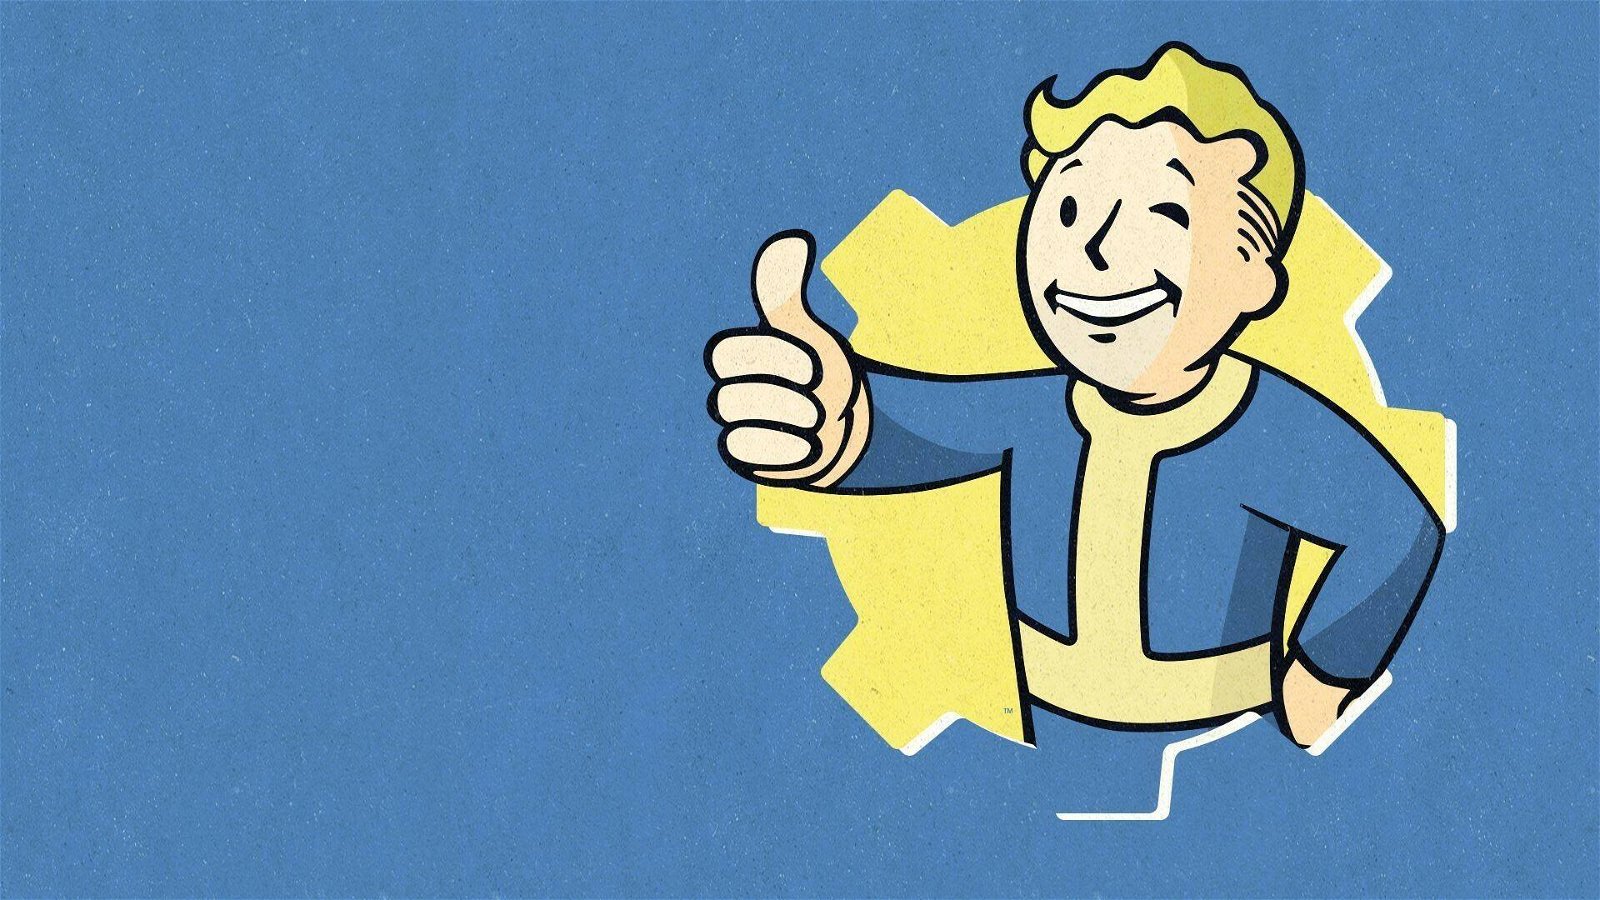 Serie TV di Fallout: possibile uscita, attori e tutto quello che sappiamo